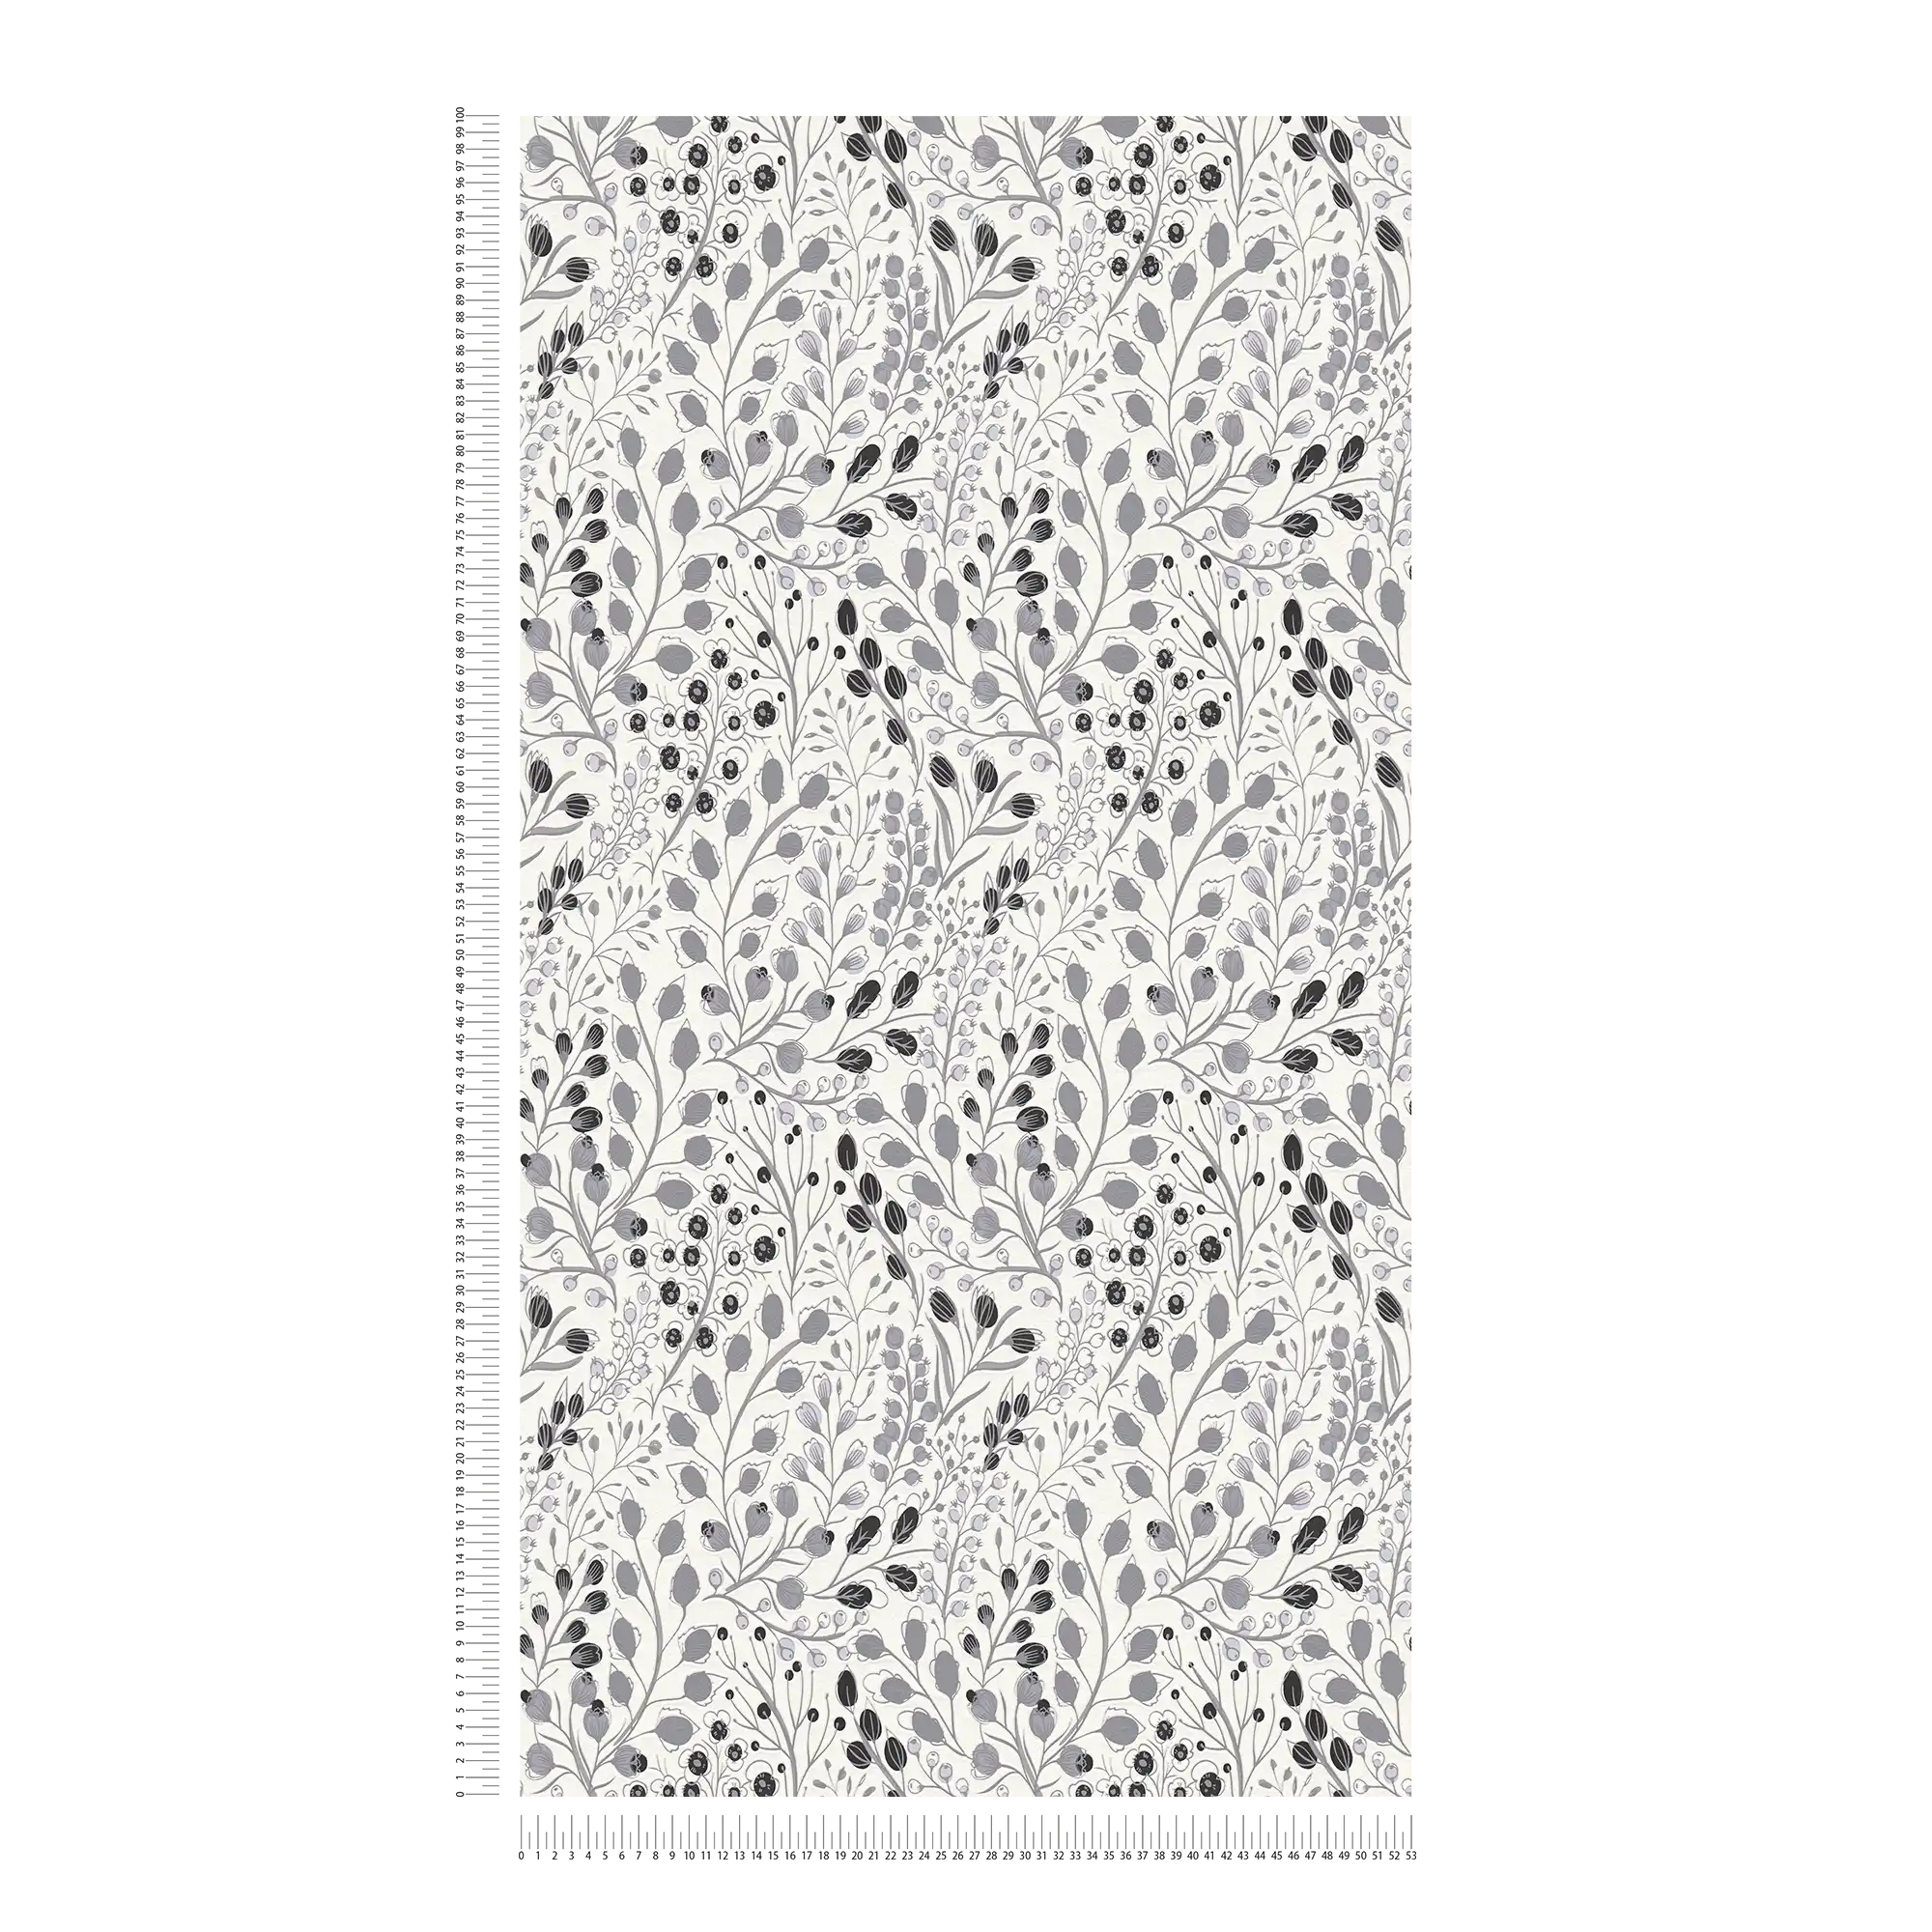             Carta da parati floreale astratta in stile disegno opaco - grigio, bianco, nero
        